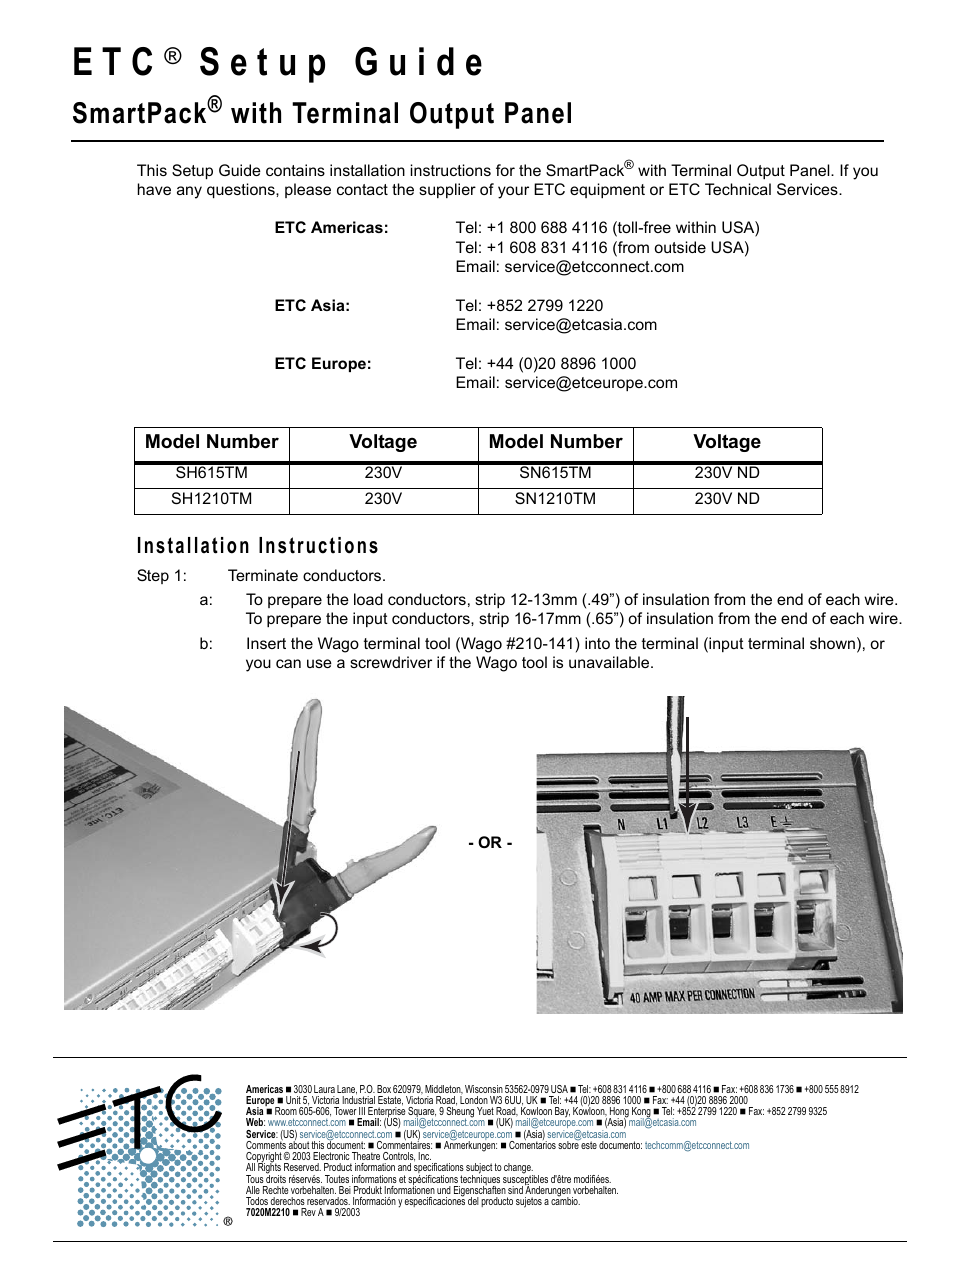 SmartPack CE Terminal Output Panel Setup Guide